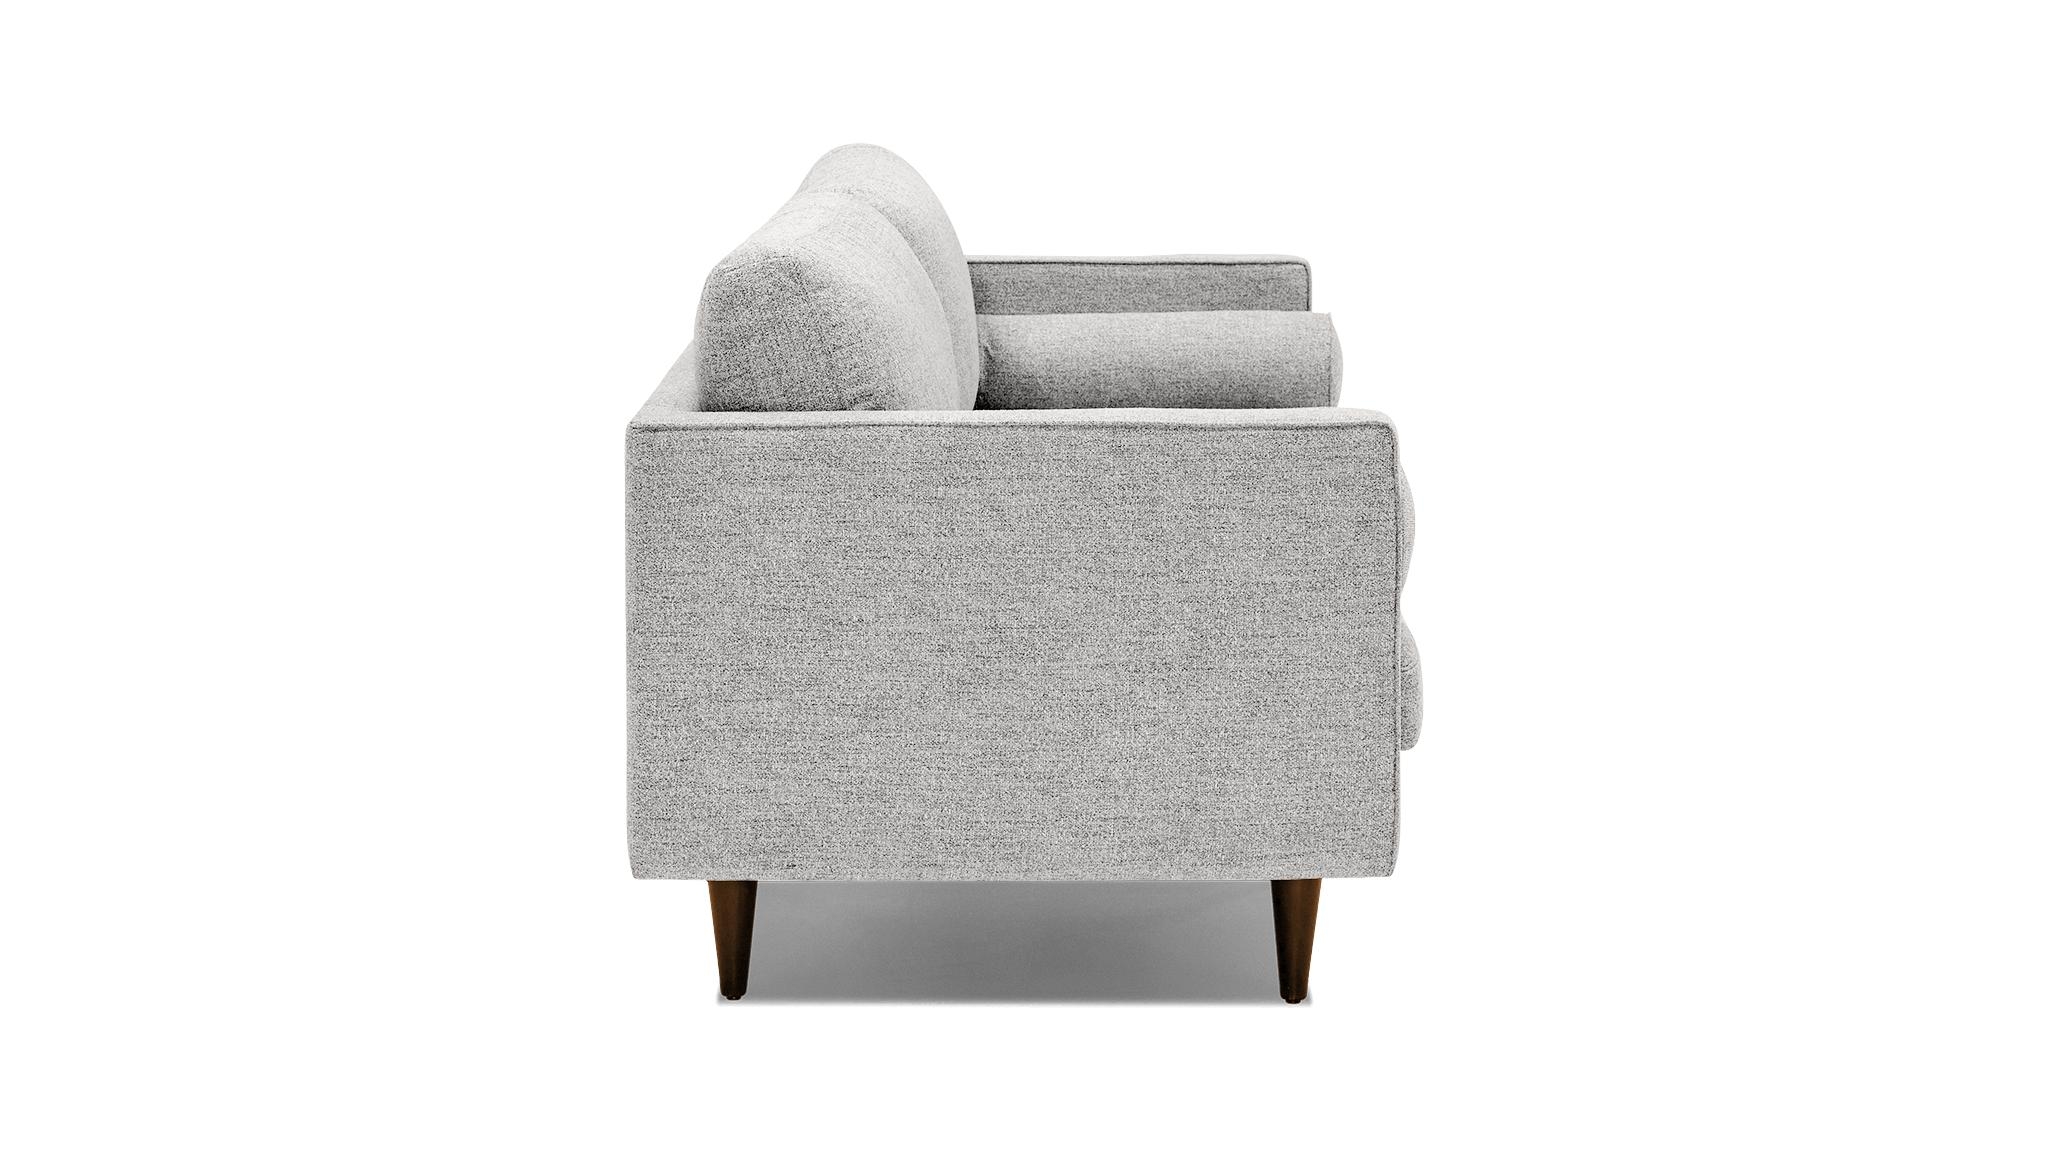 Gray Briar Mid Century Modern Sofa - Sunbrella Premier Fog - Mocha - Image 2